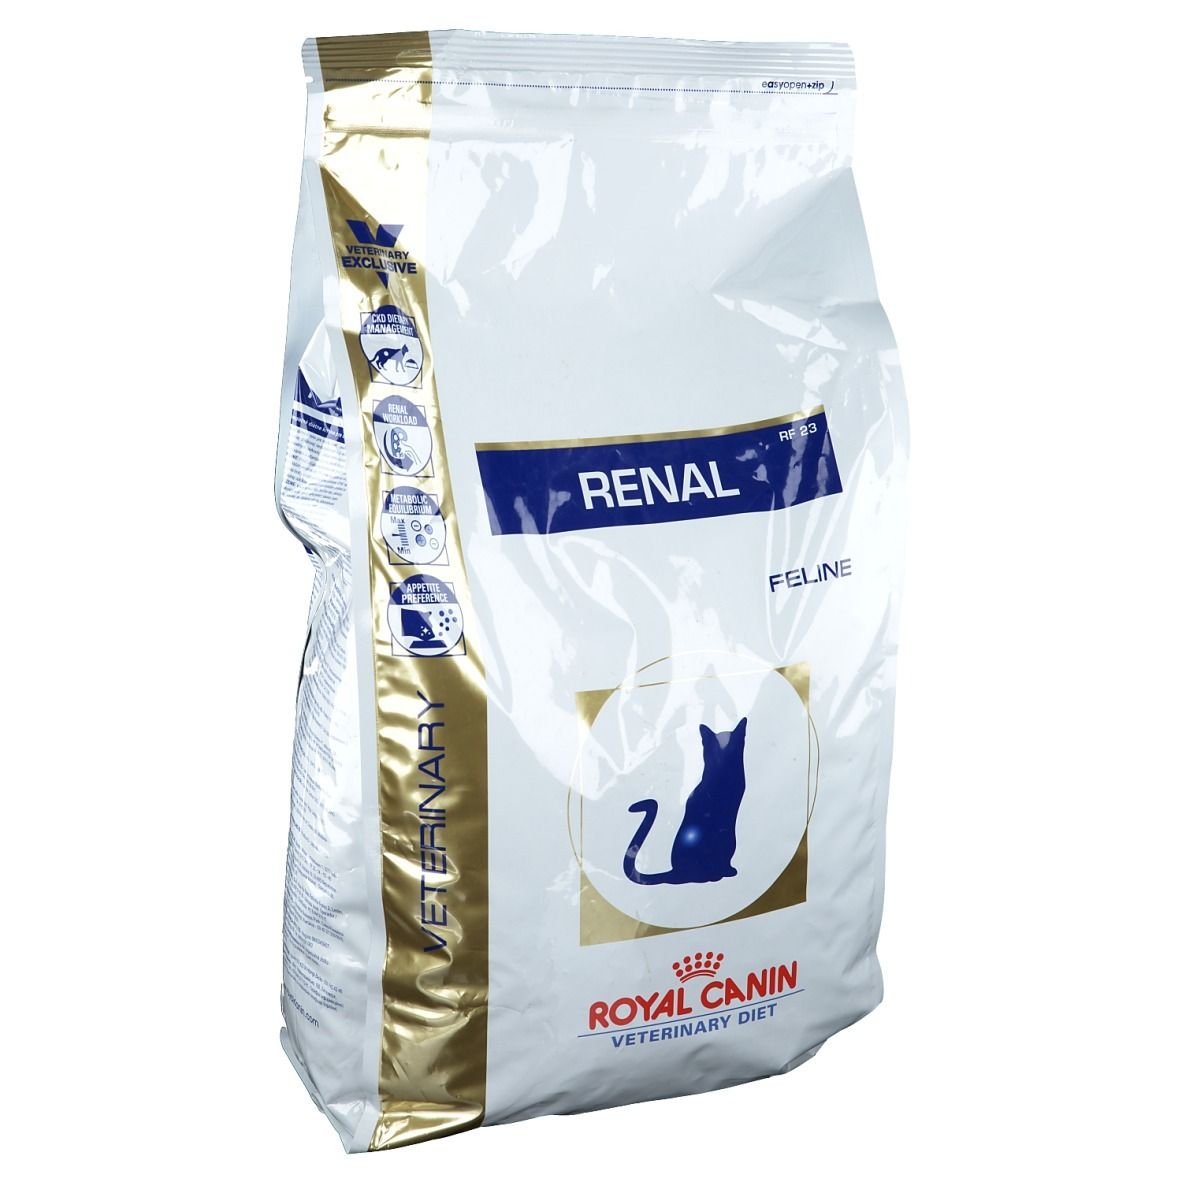 Royal Canin Renal Aliment diététique pour chat